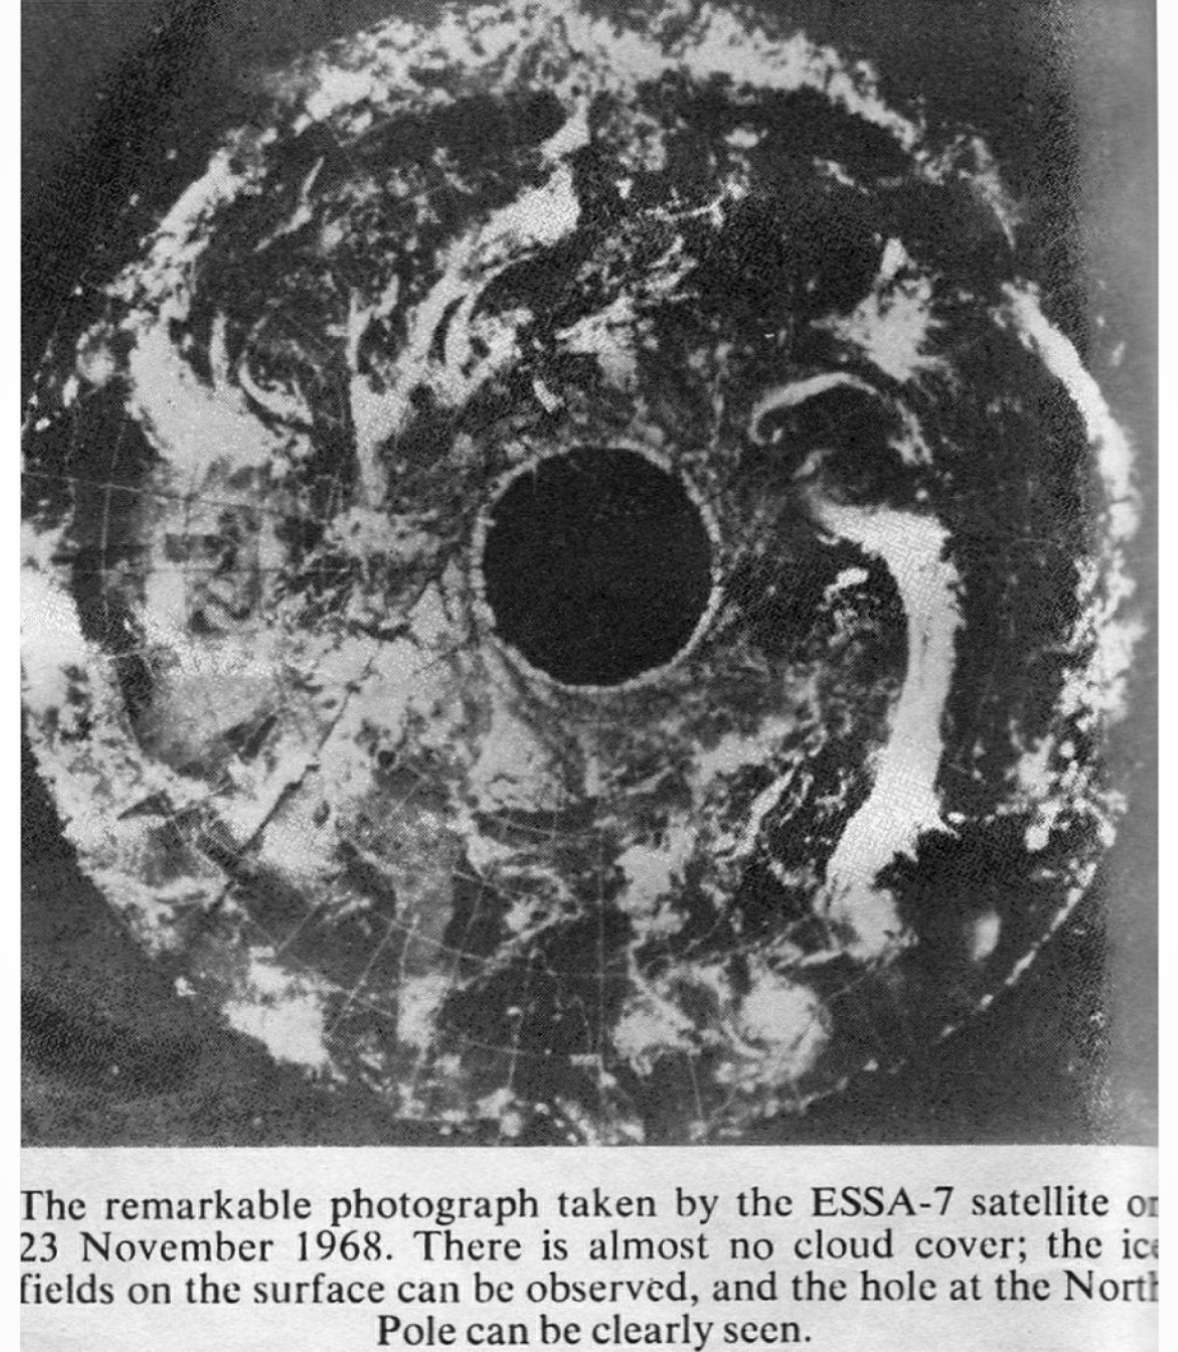 Imagem de satélite ESSA-7 mostra buraco gigante no pólo norte